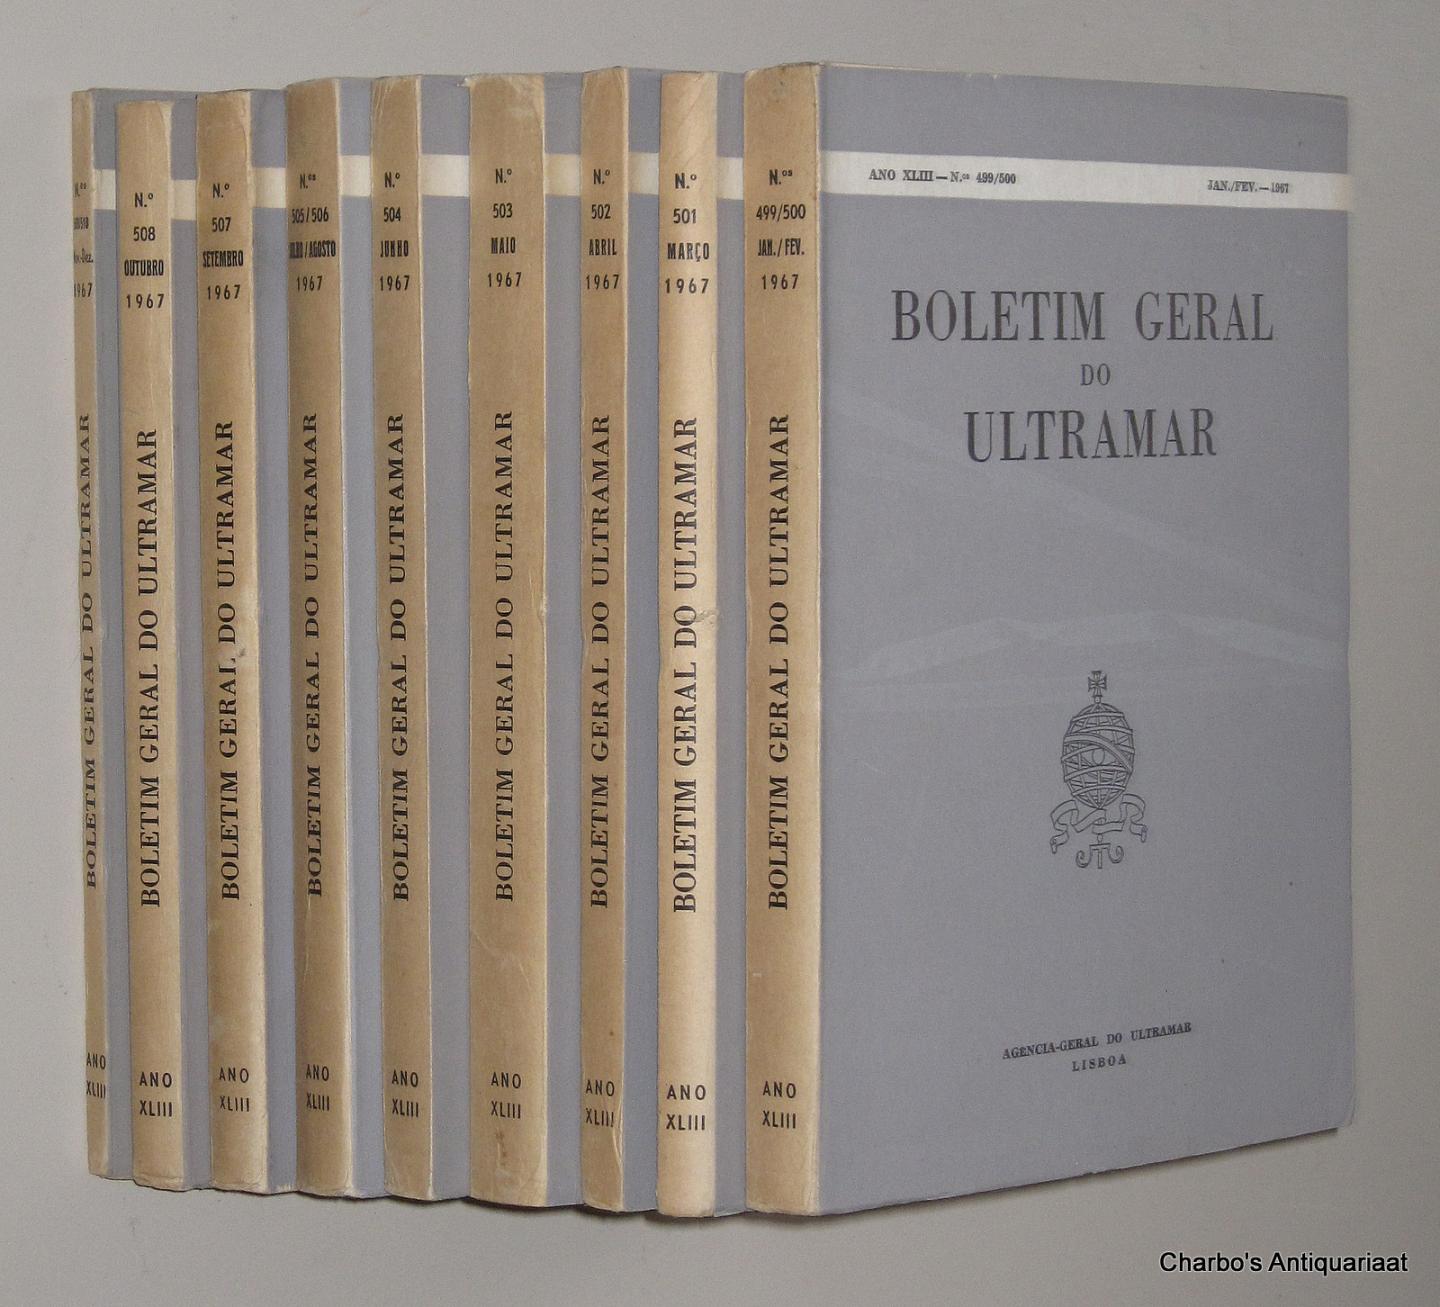 AGENCIA GERAL DO ULTRAMAR, - Boletim Geral do Ultramar, ano XLIII No. 499, Janeiro - No. 510, Dezembro 1967.